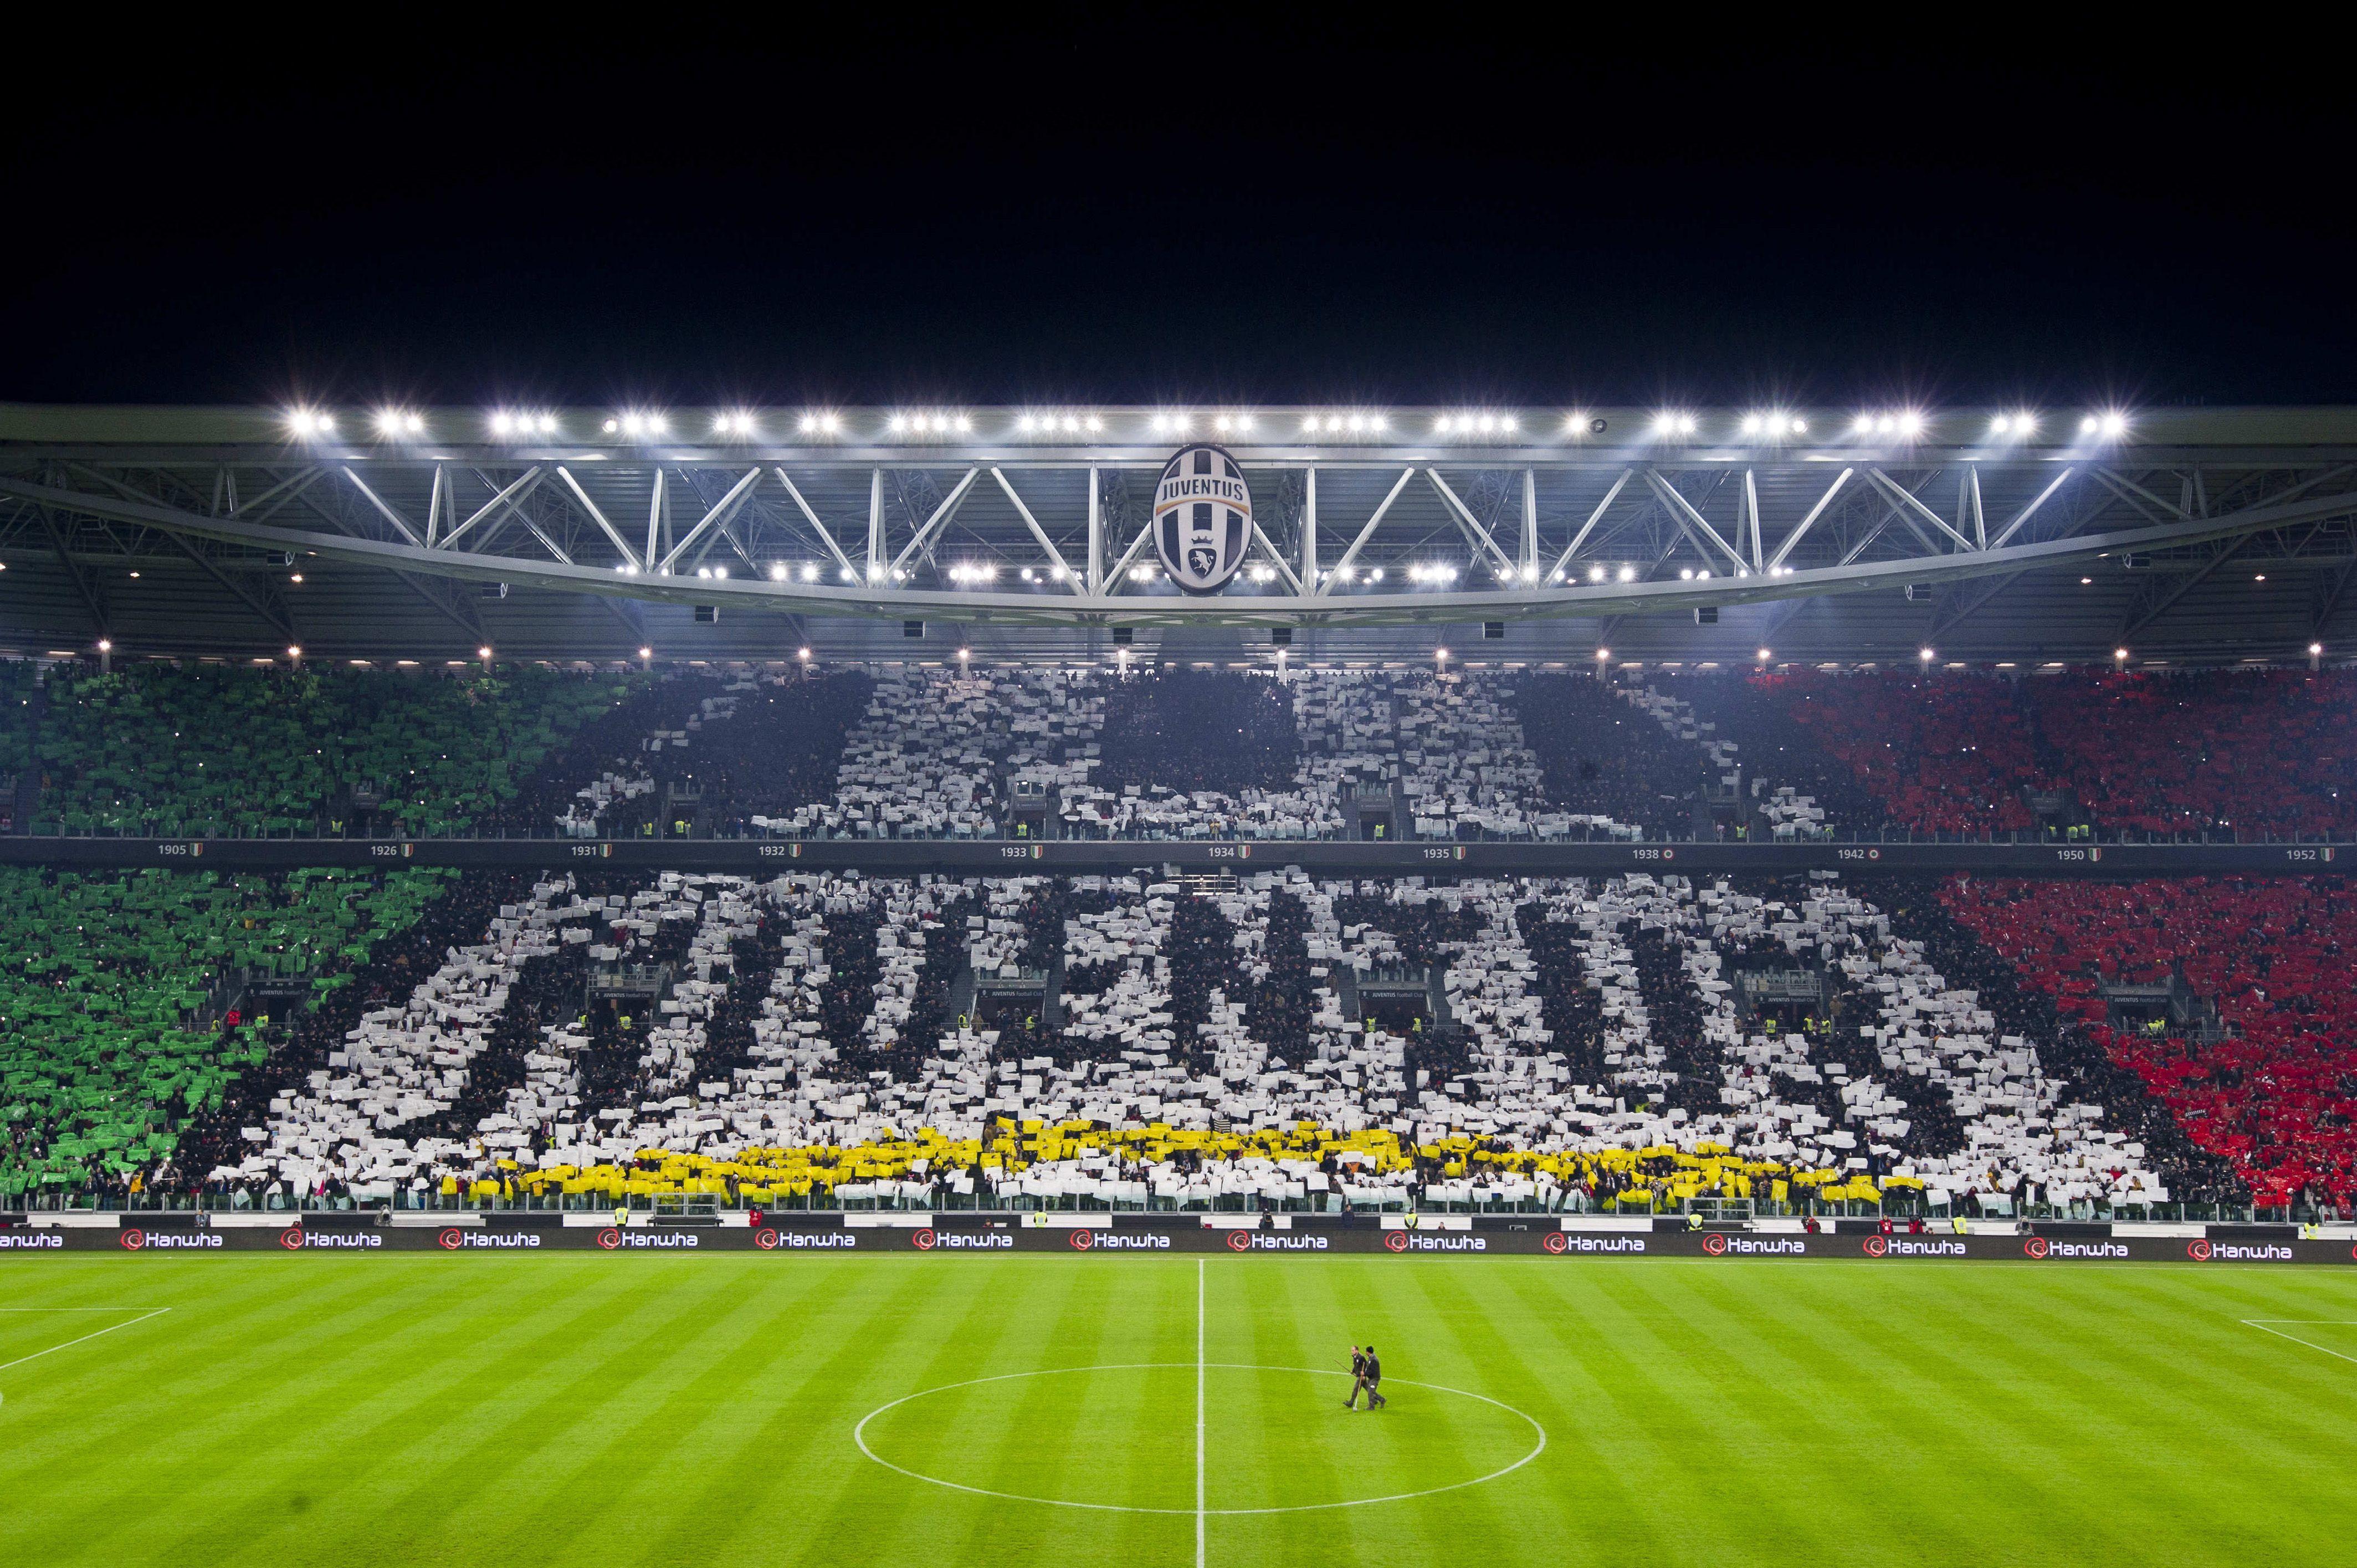 Juventus 2015 Wallpapers